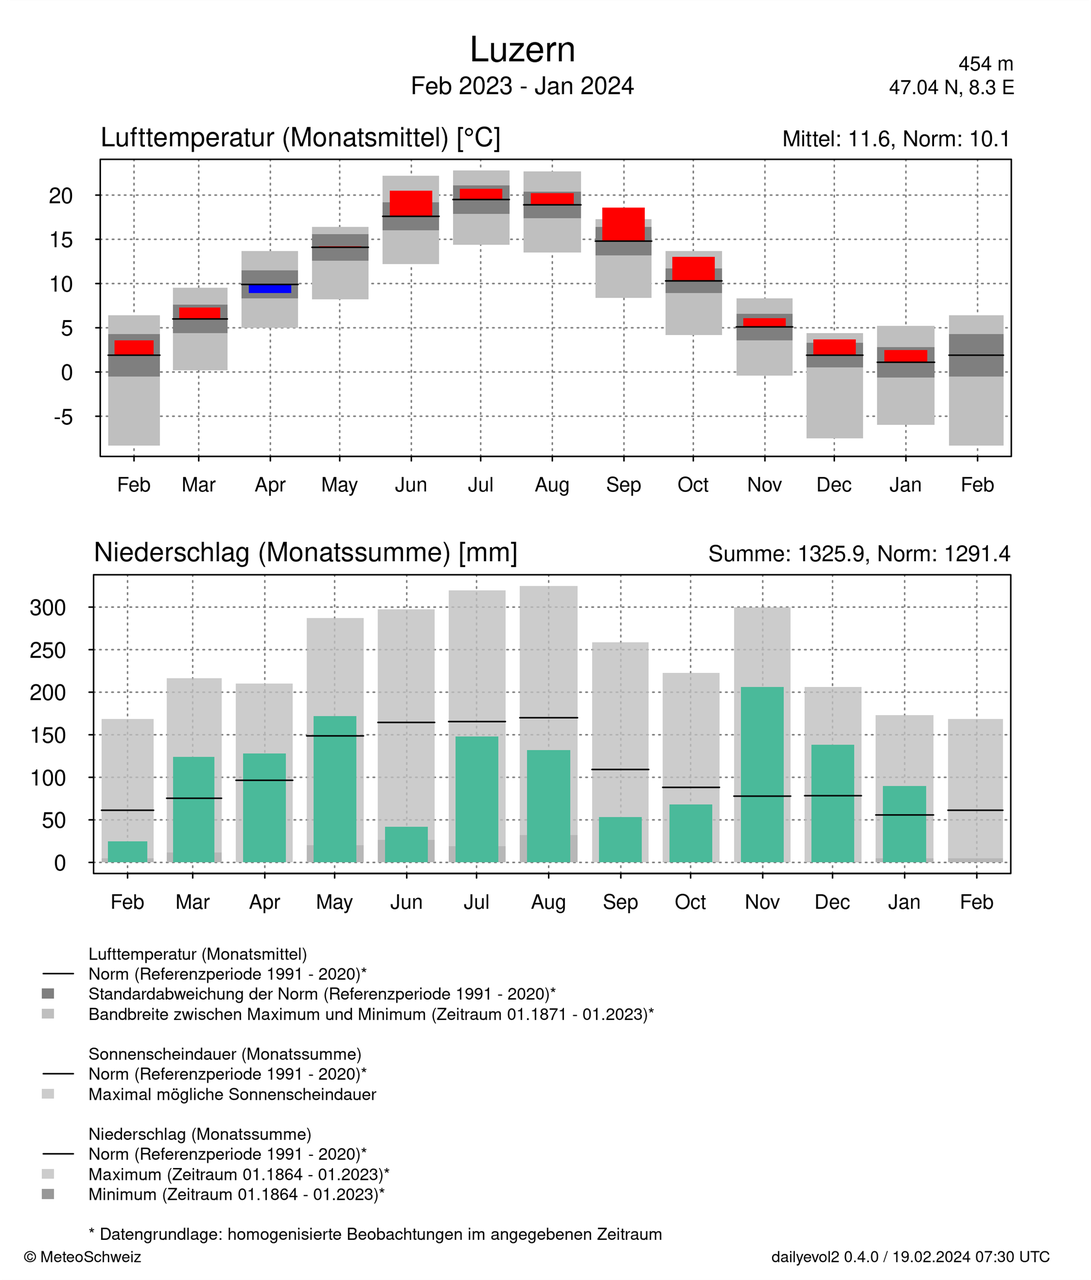 Entwicklung der diesjährigen monatlichen Durchschnittstemperatur (oben, rot) und des monatlichen Niederschlags (unten, grün) im Vergleich zum Durchschnittswert (schwarzer Balken). Quelle: MeteoSchweiz 2024